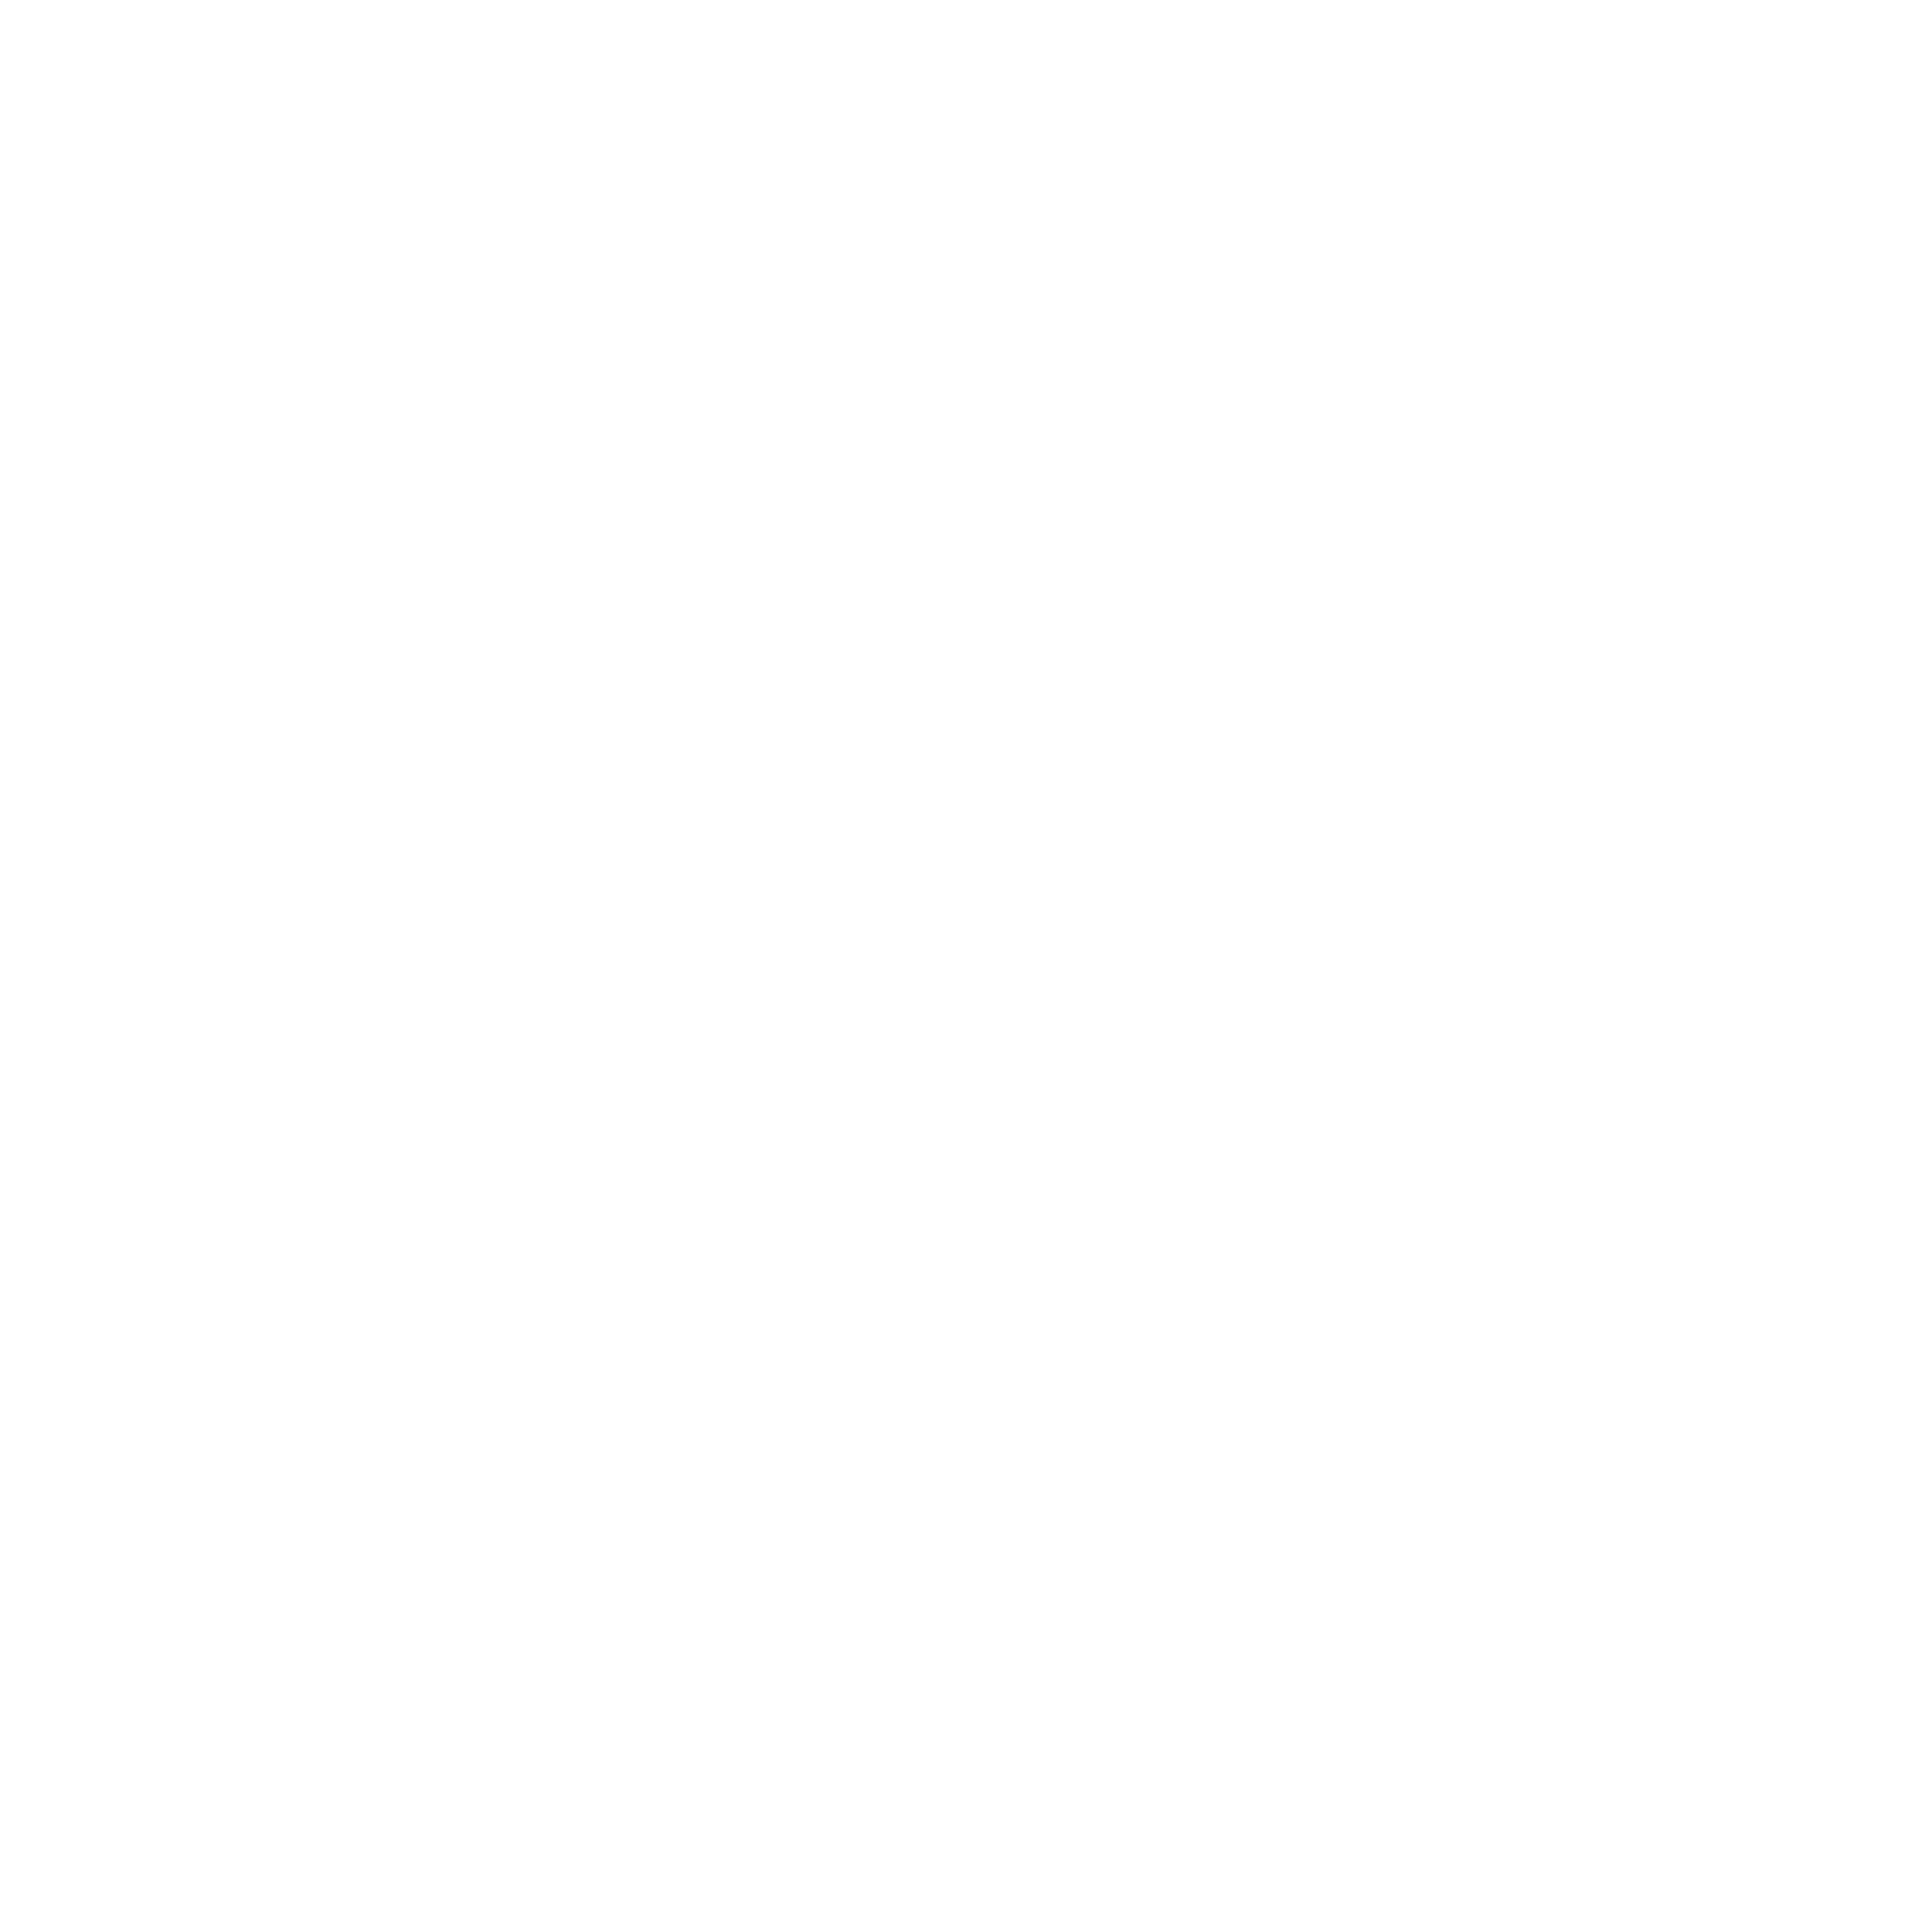 logo plan takaful transparen-01